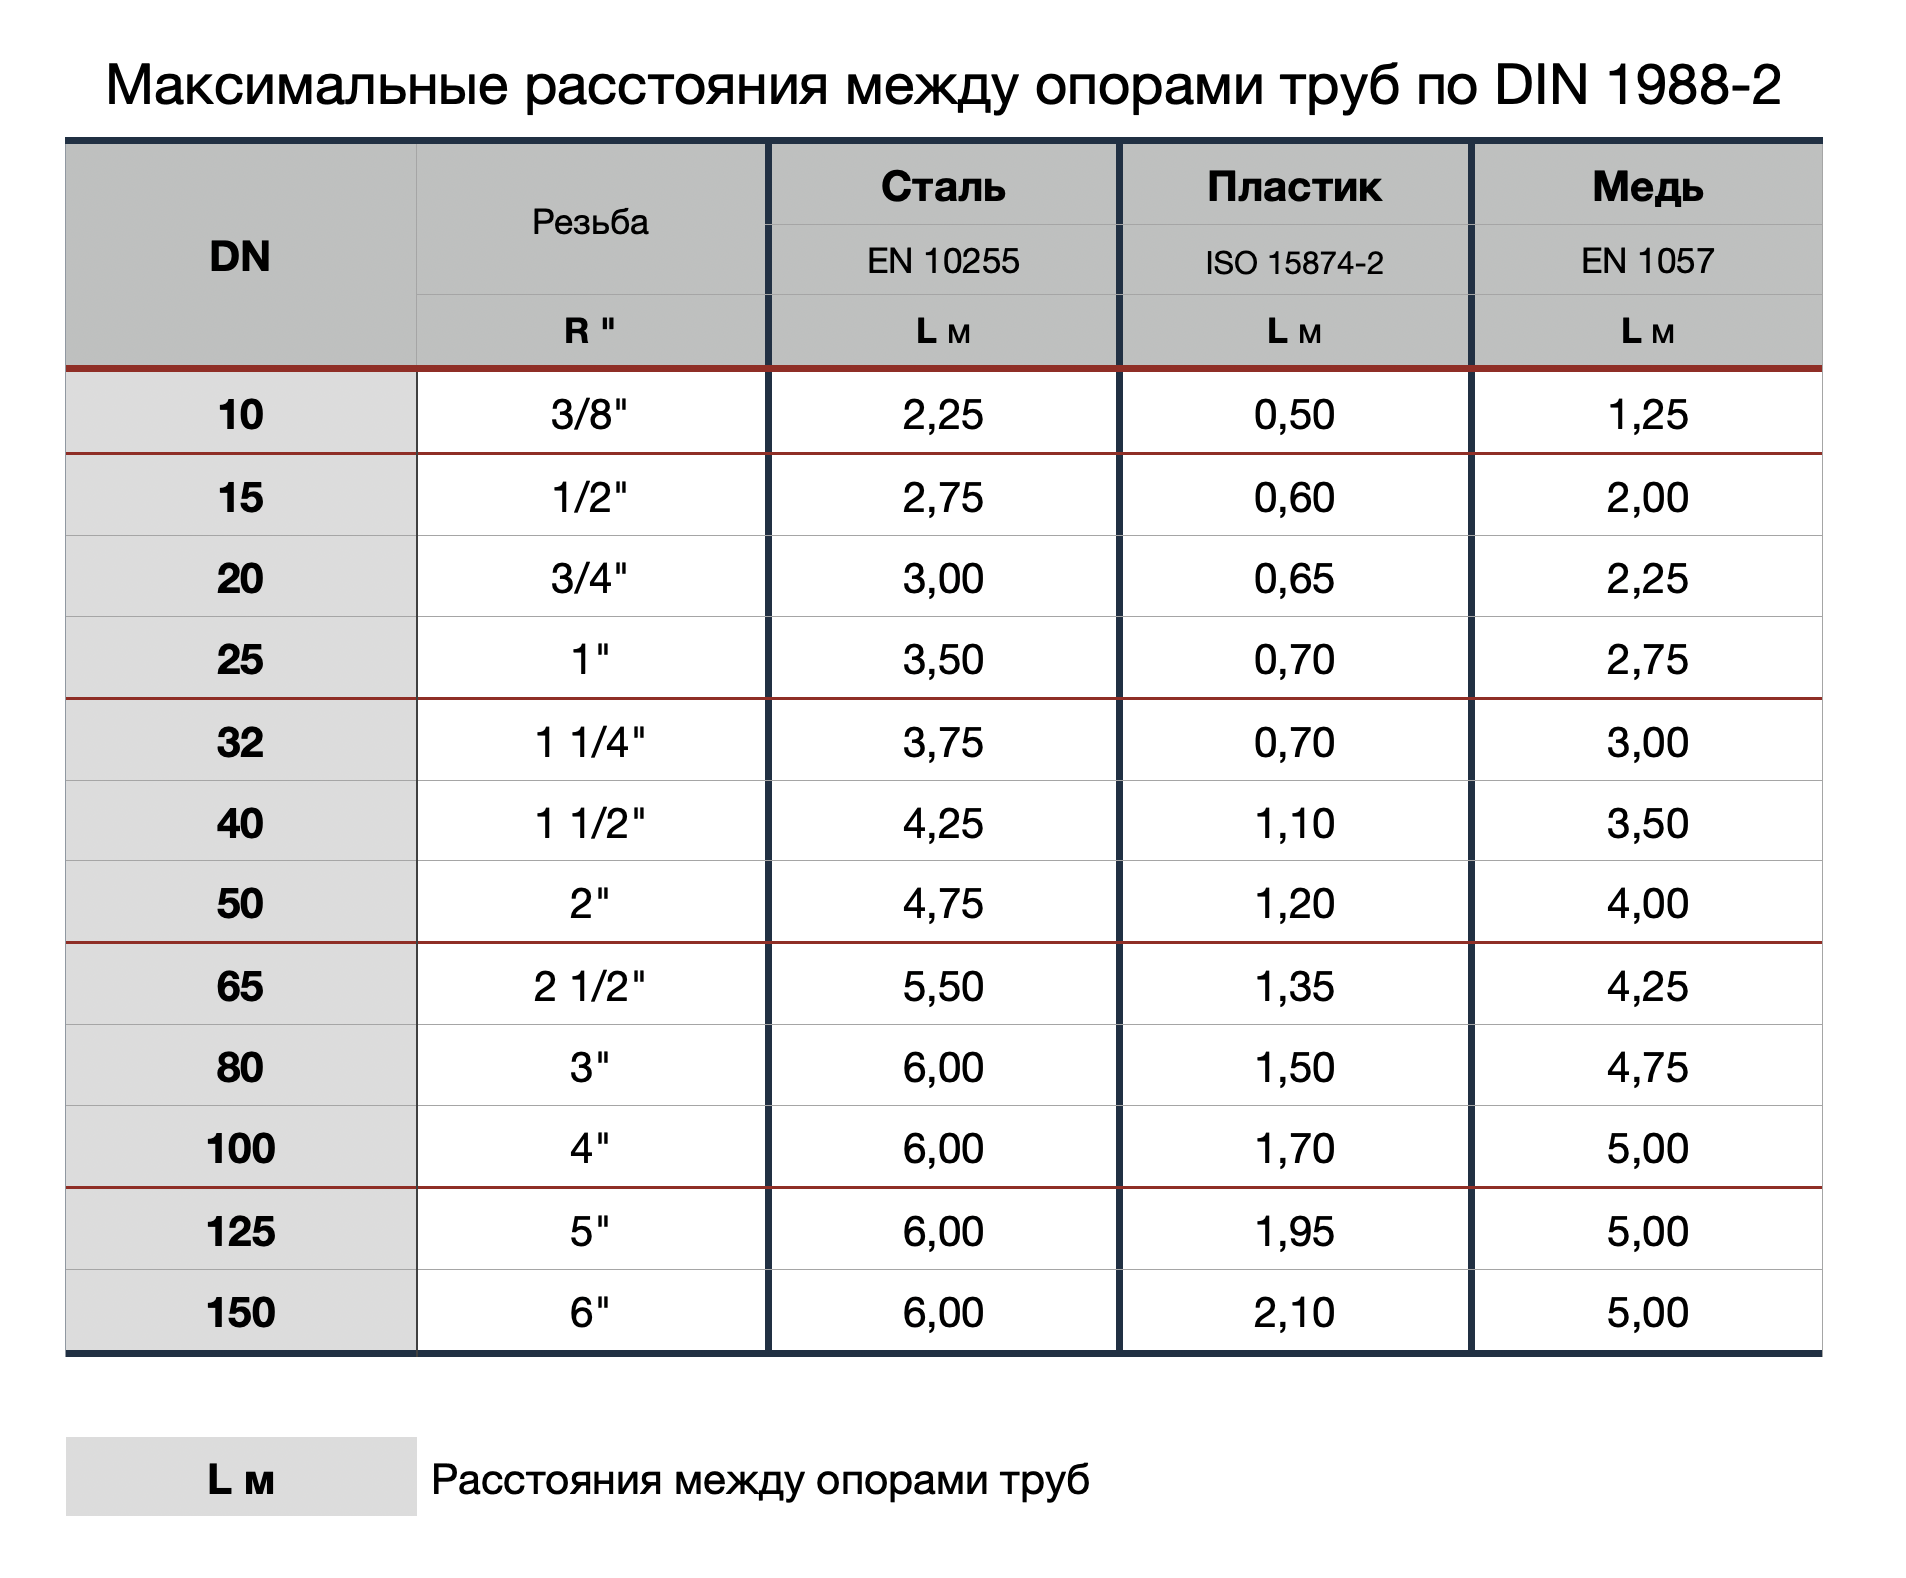 Максимальные расстояния между опорами труб по DIN 1988-2